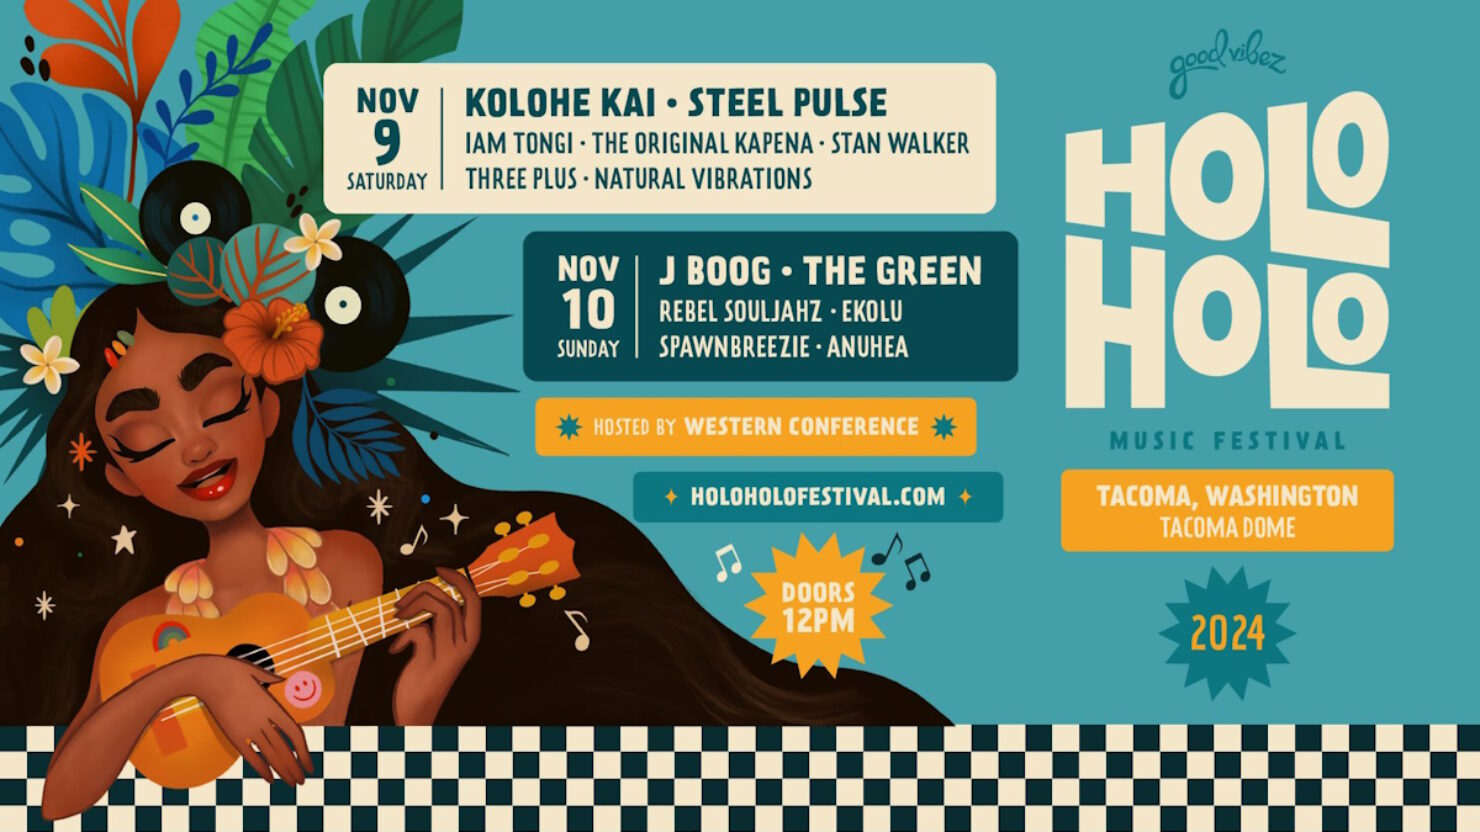  Holo Holo Music Festival Expands To Tacoma With Kolohe Kai, J Boog & More 